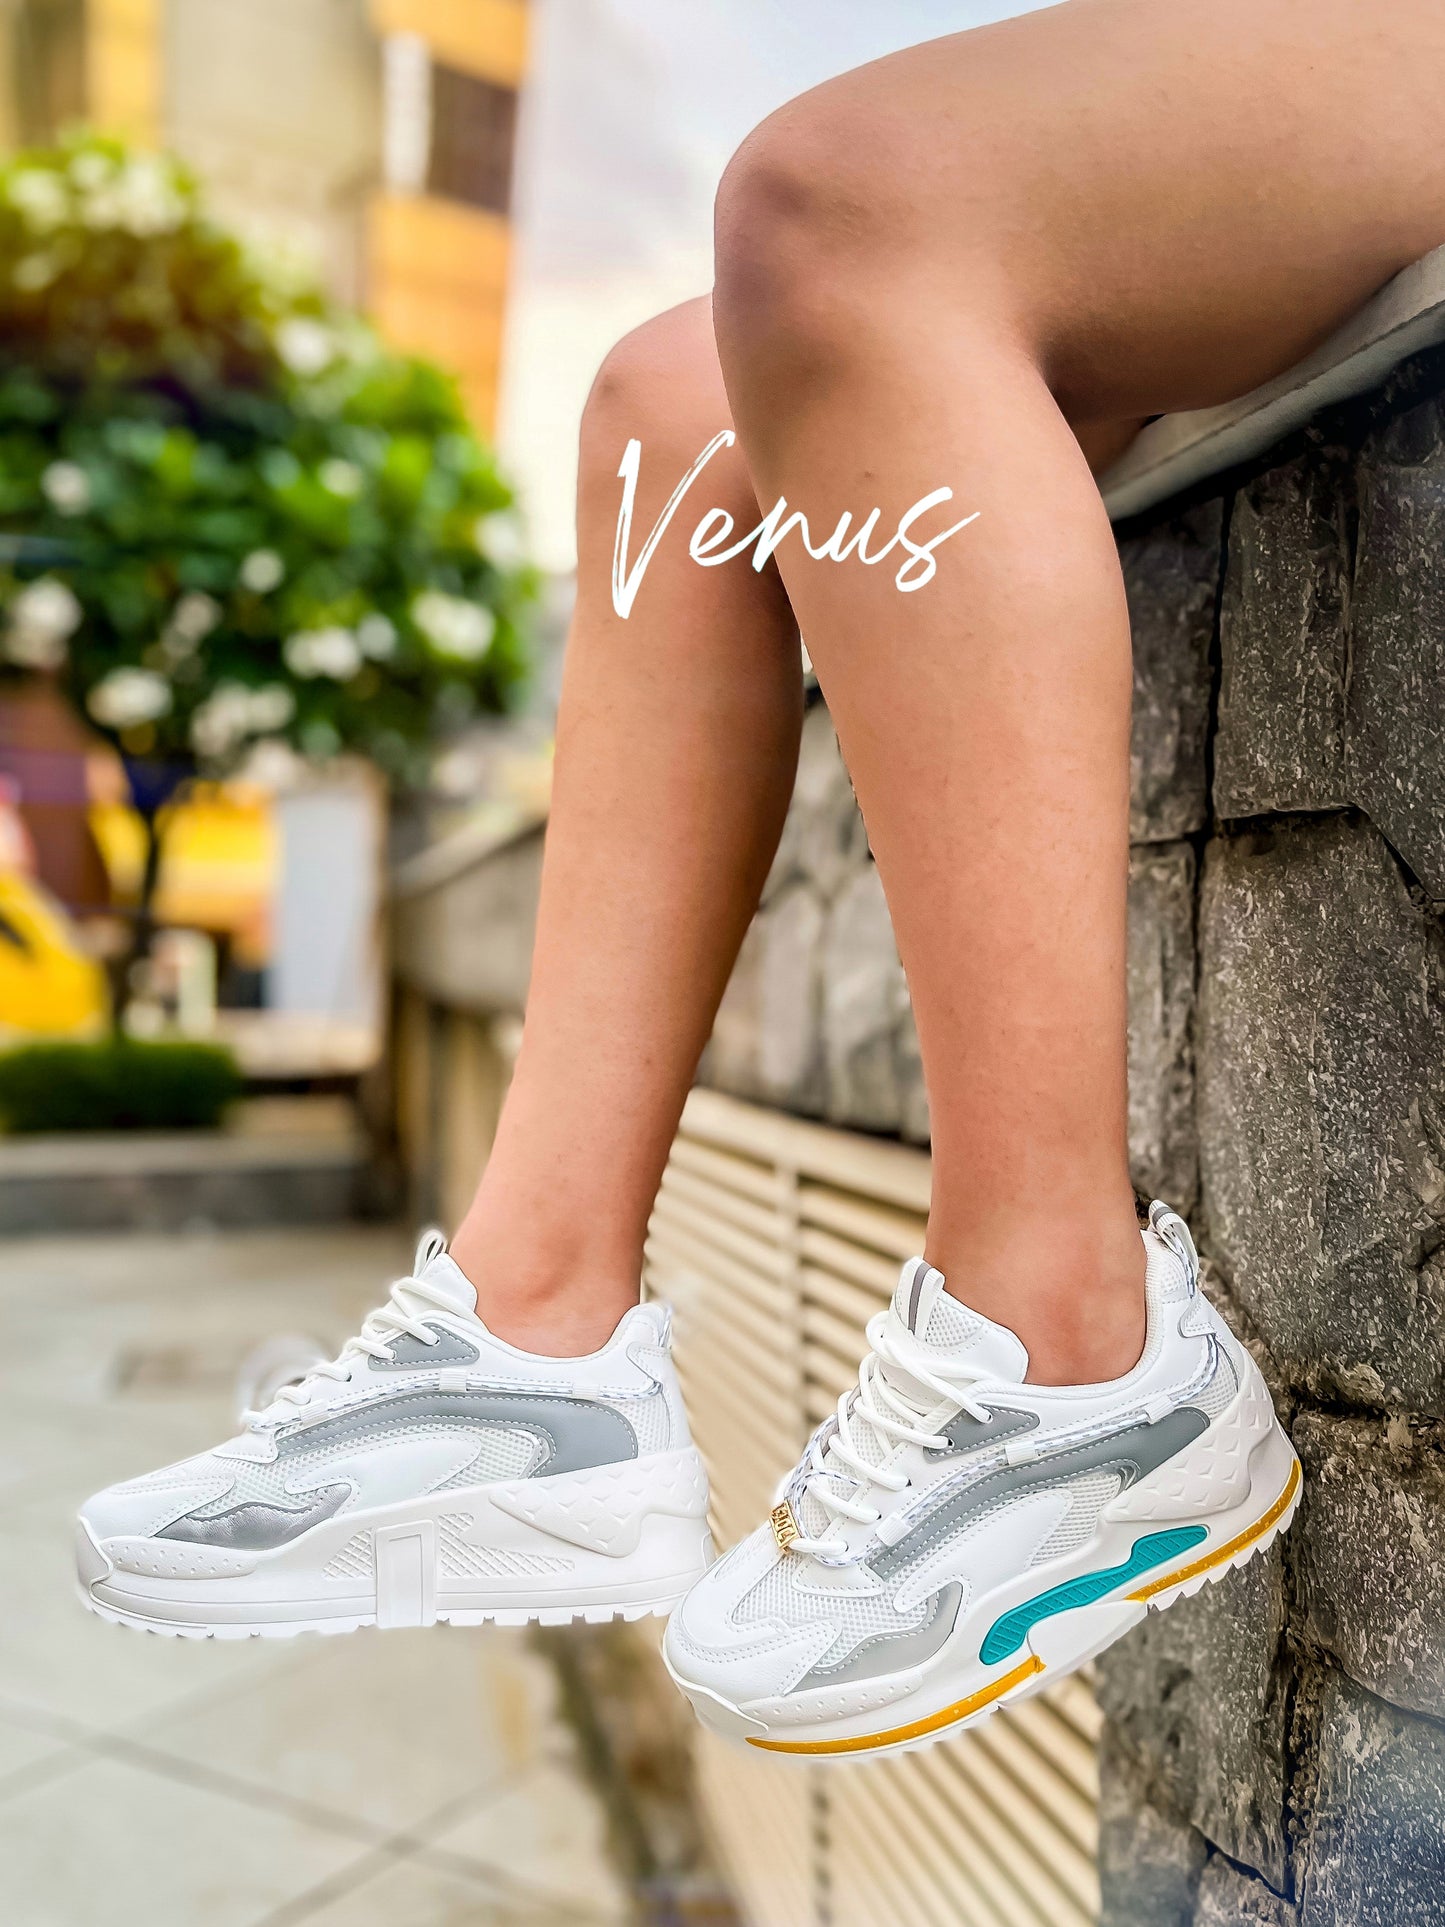 Venus LT / Blush White (Women)